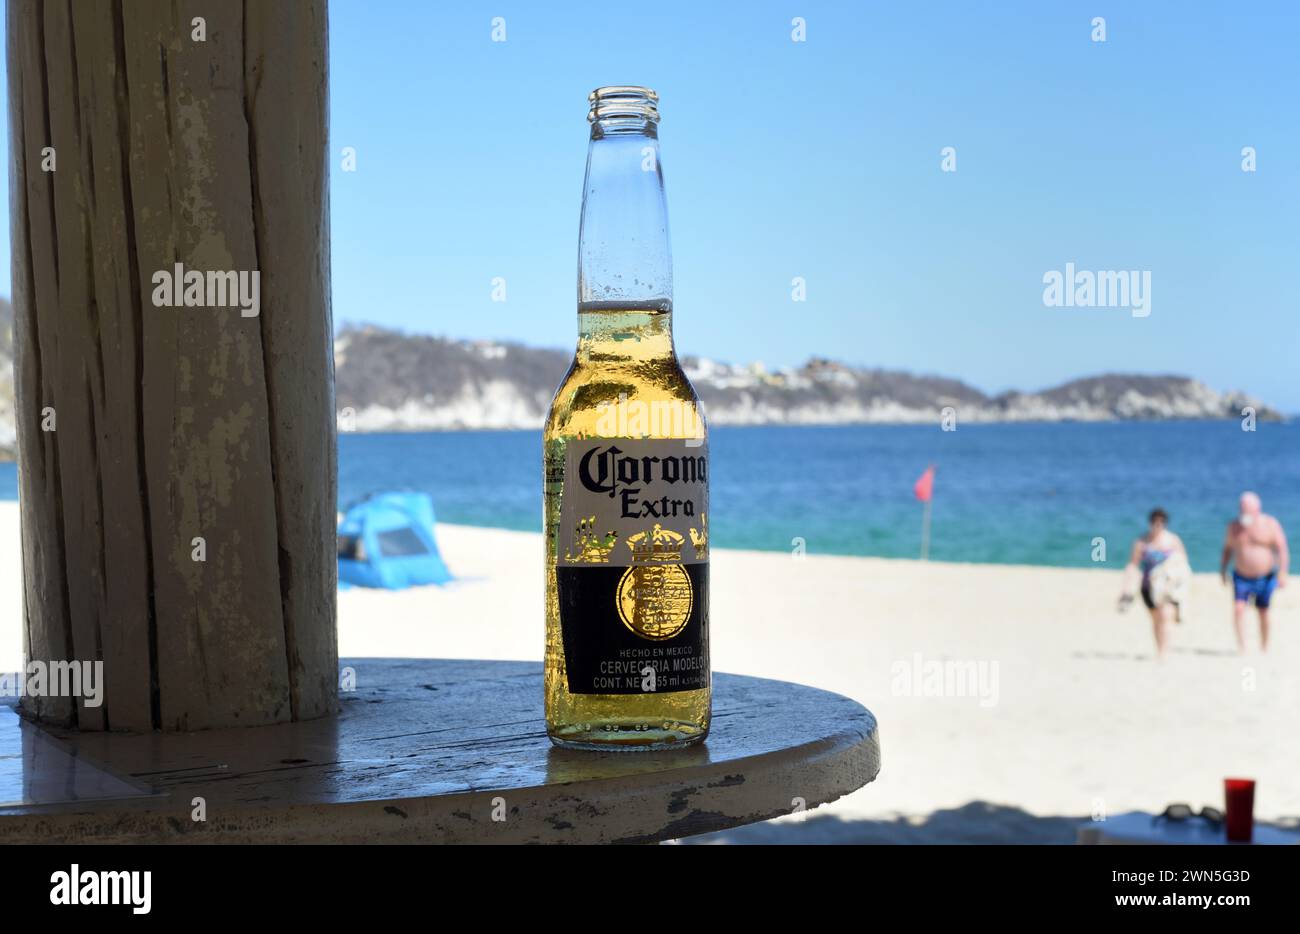 Une bouteille de bière Corona Extra est posée sur une table sur une plage à Huatulco, Oaxaca, Mexique. Vivre à l'étranger Banque D'Images